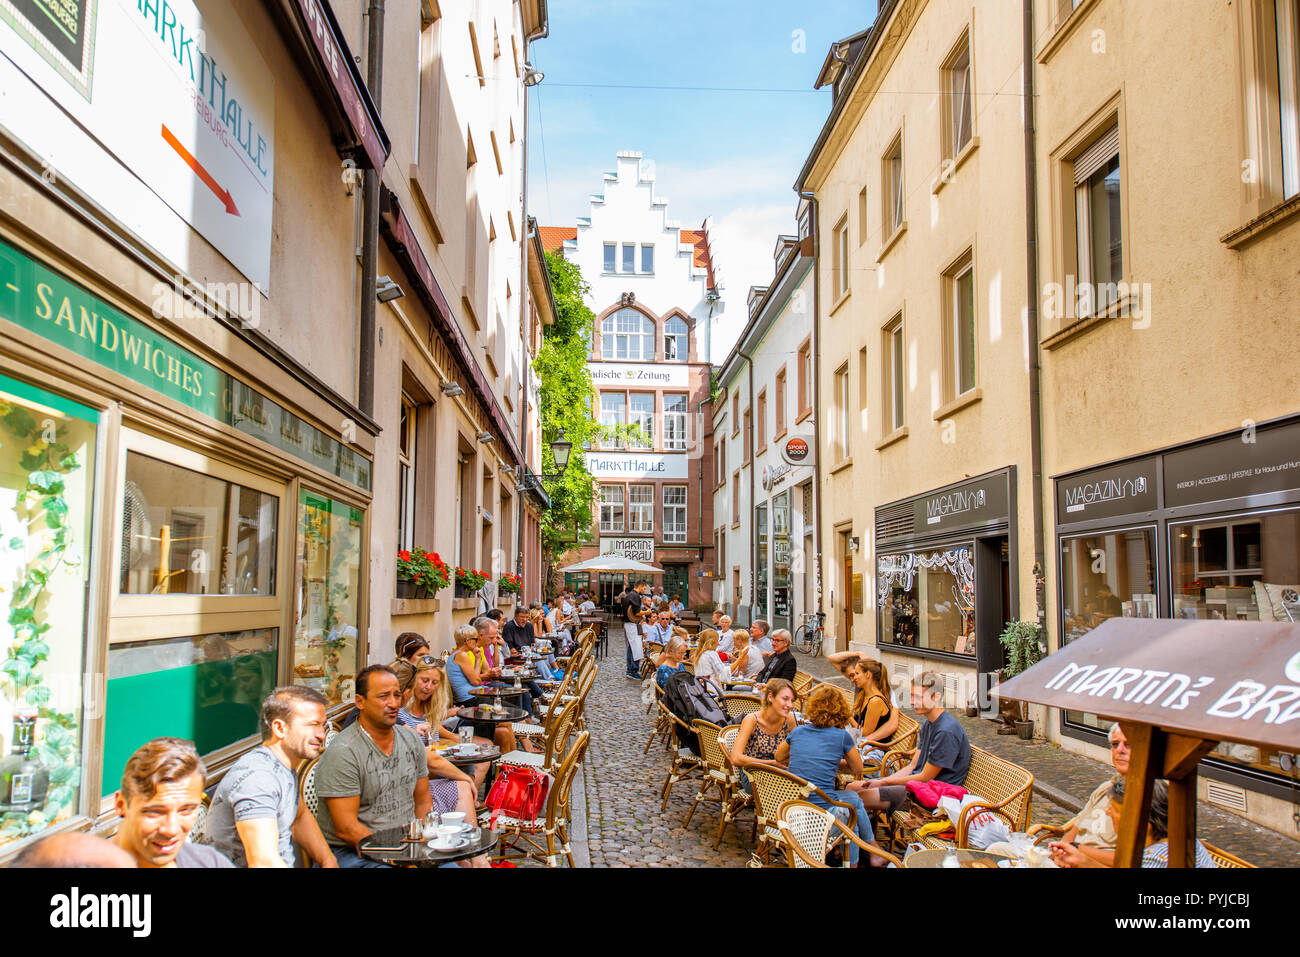 FREIBURG, Germania - 10 Settembre 2017: Street view con ristoranti e caffè affollato di turisti nella città vecchia di Friburgo, Germania Foto Stock